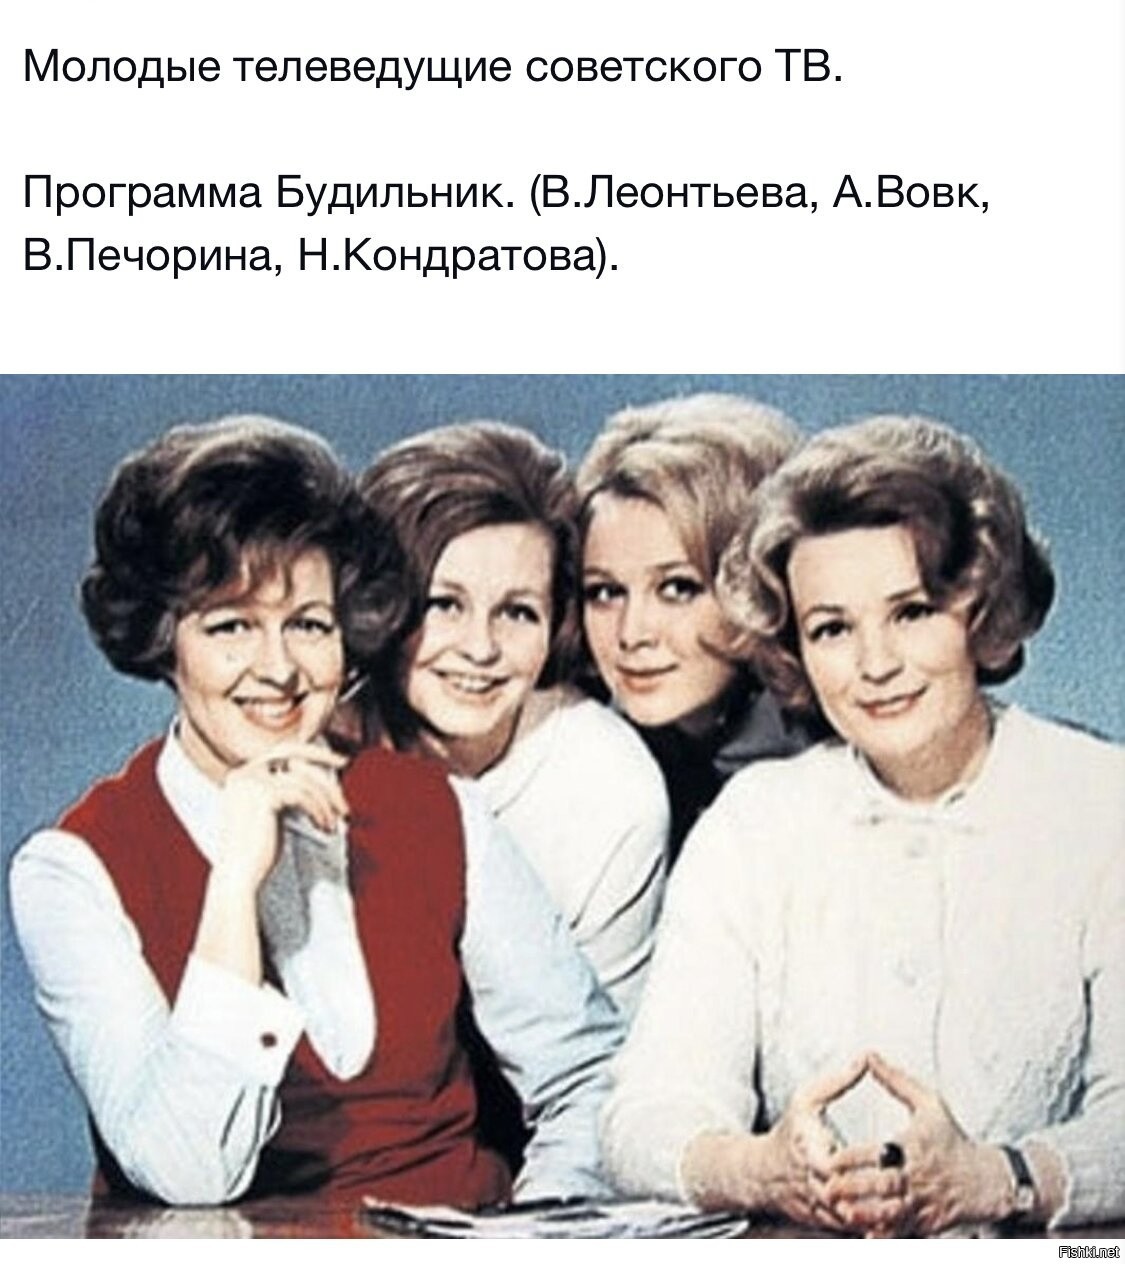 советские дикторы телевидения женщины фамилии фото